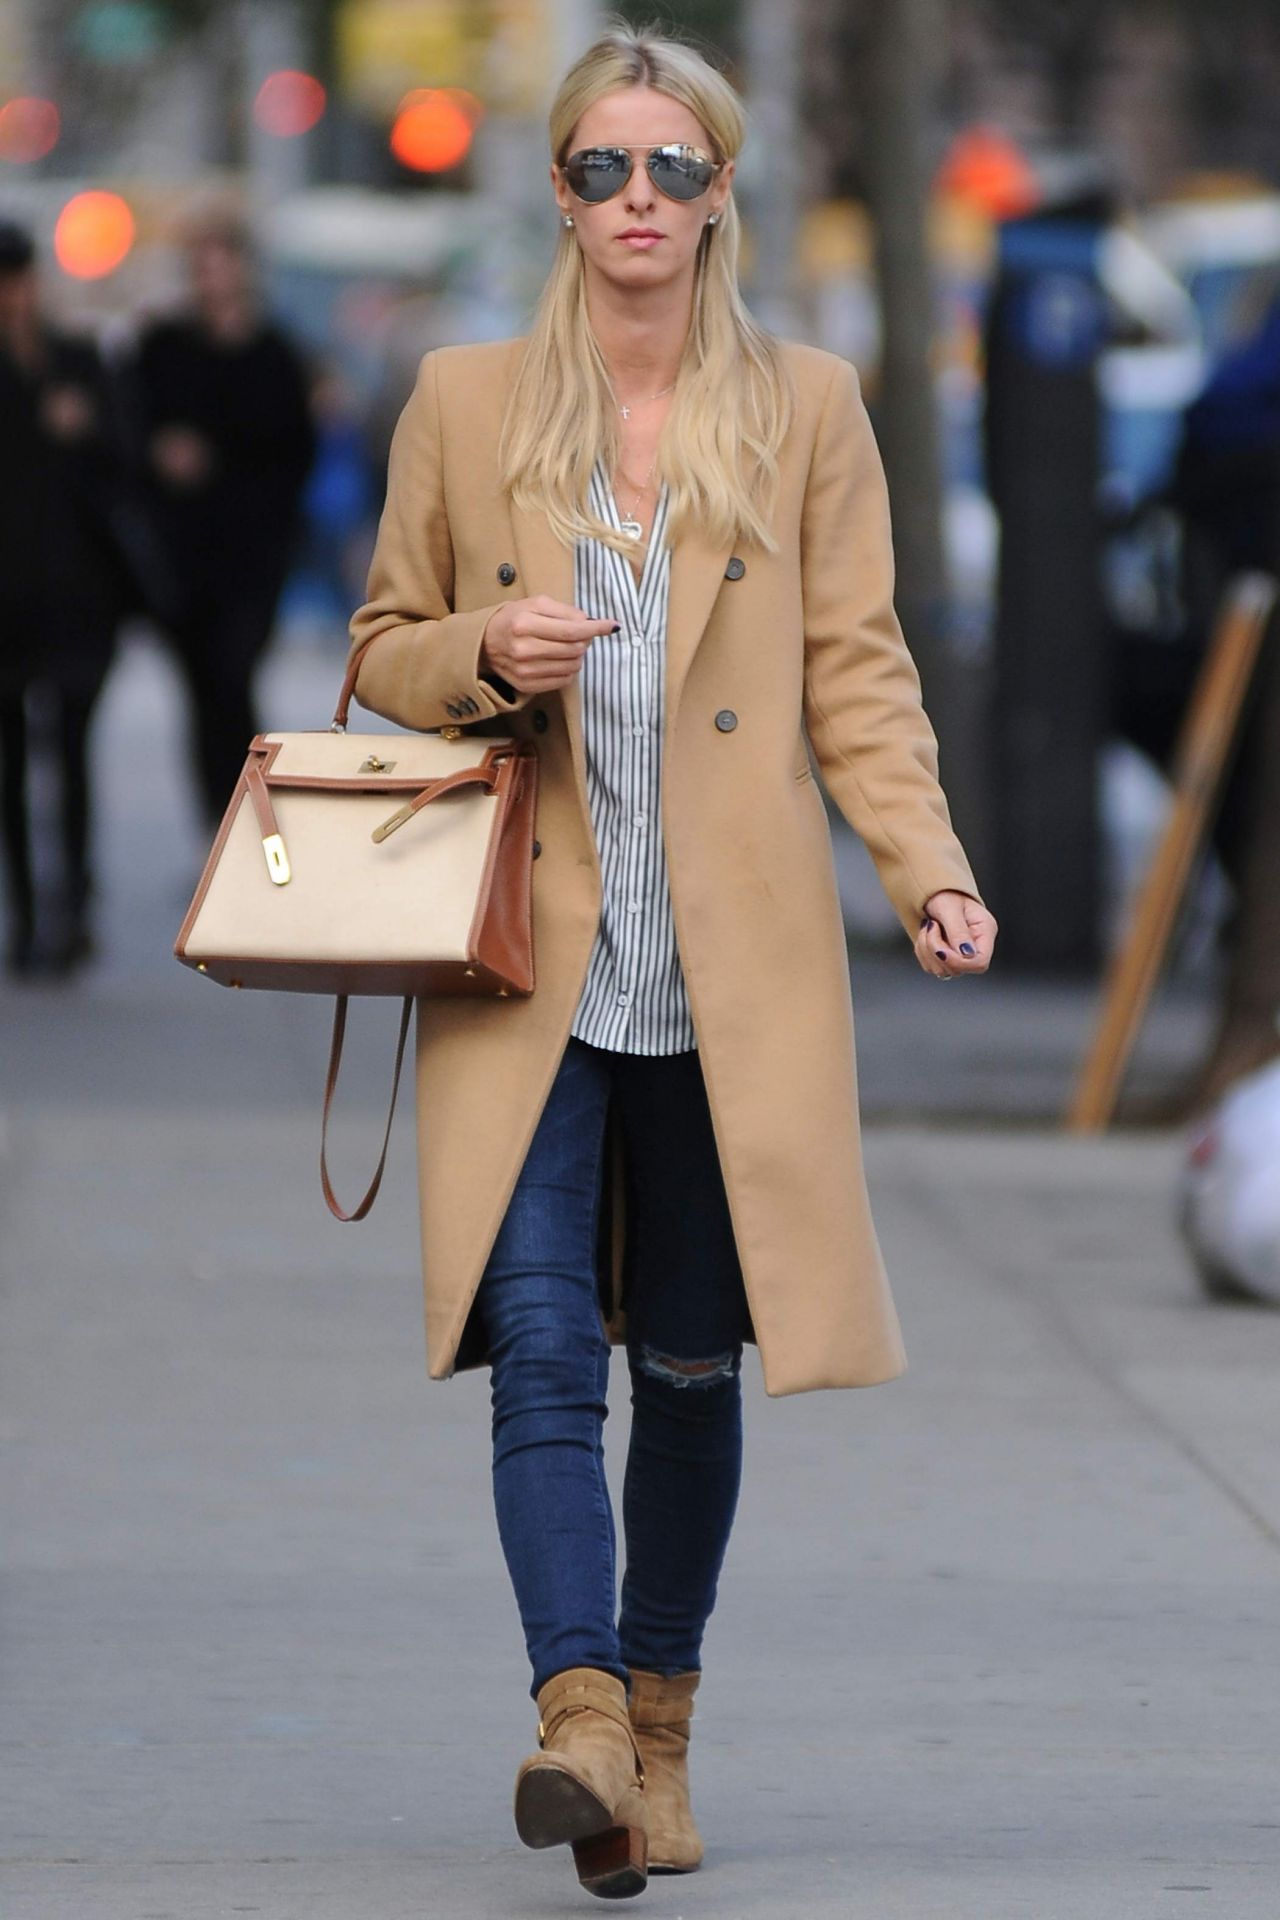 Nicky Hilton New York City October 28, 2014 – Star Style